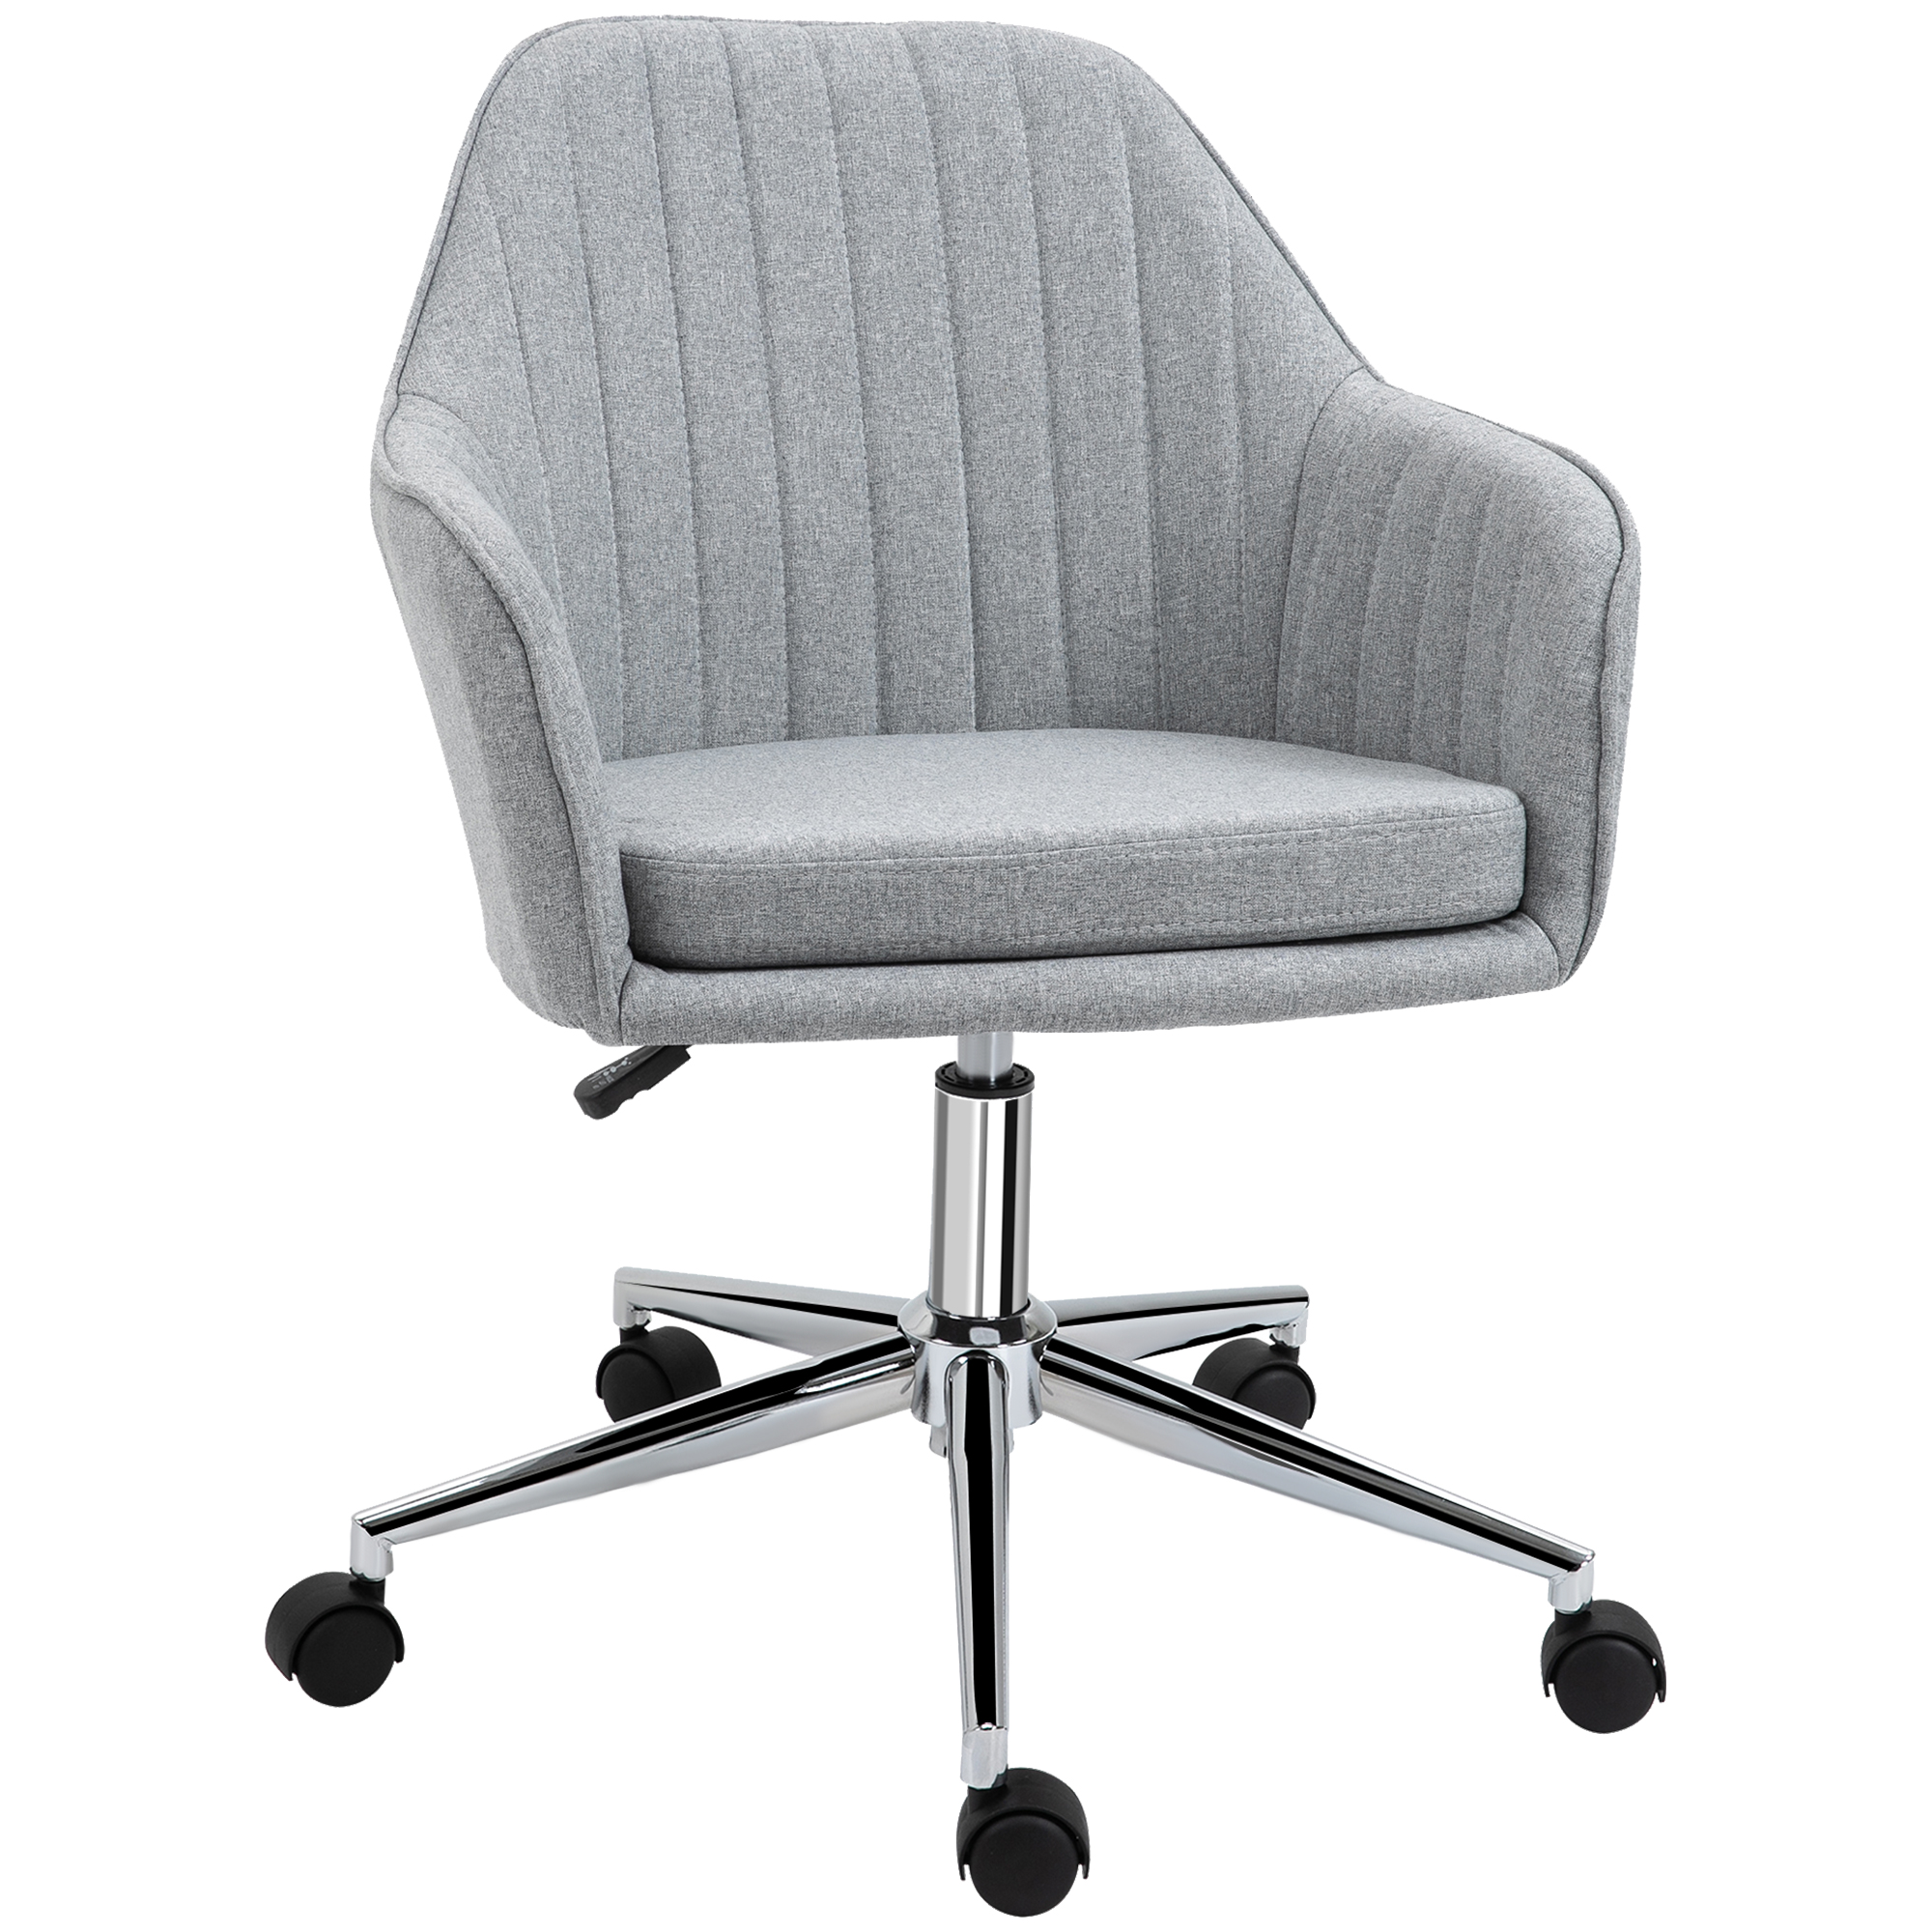 Υφασμάτινη καρέκλα γραφείου Vinsetto με περιστρεφόμενο κάθισμα και ρυθμιζόμενο ύψος